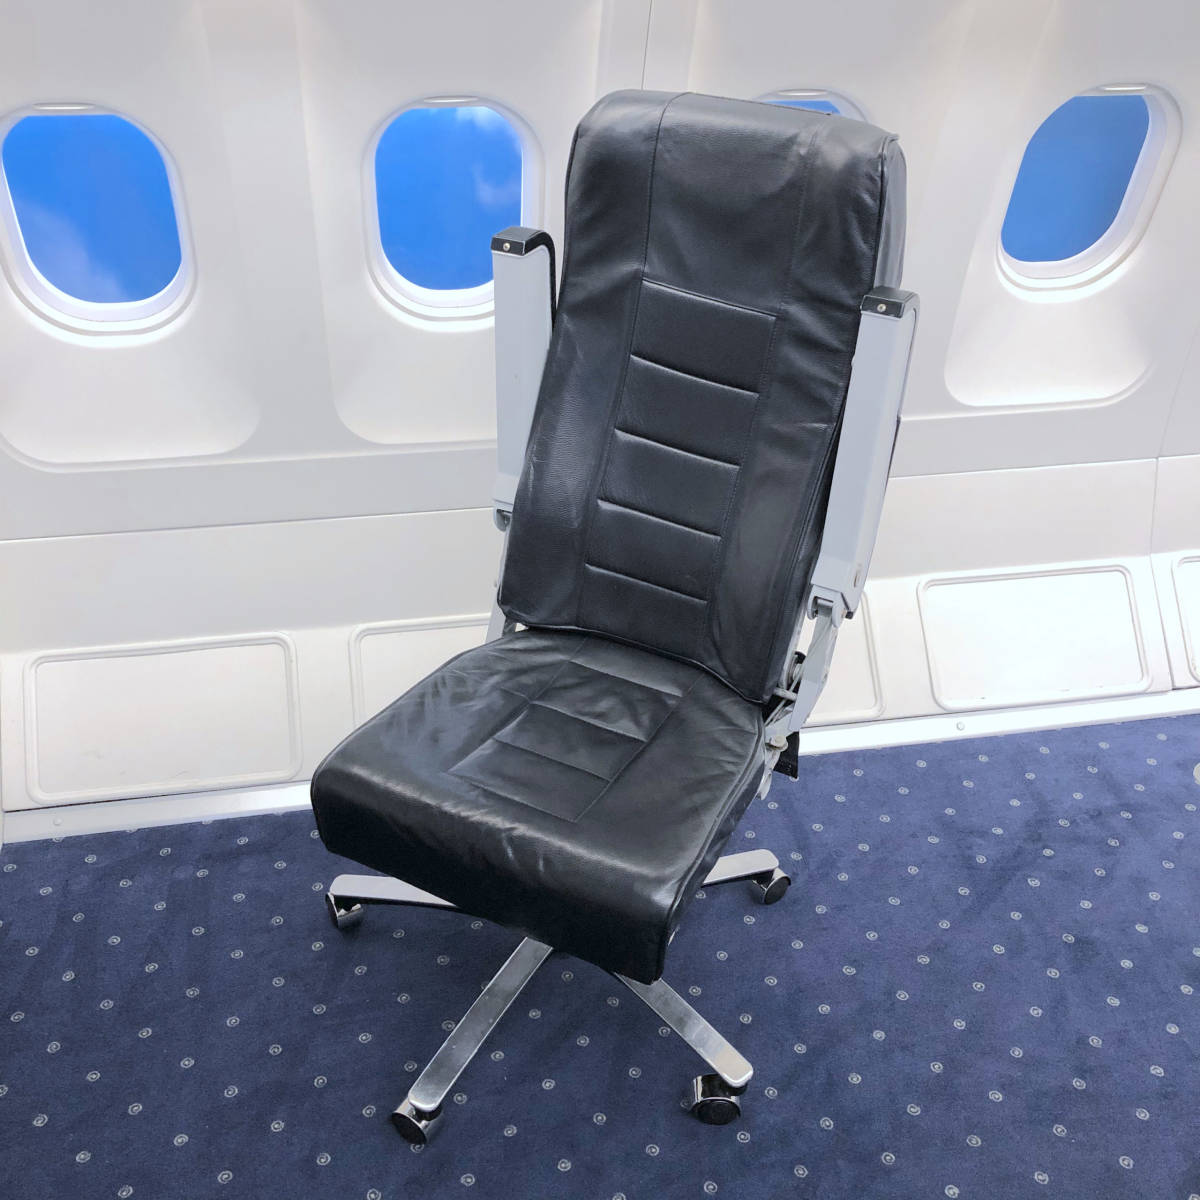 エコノミークラス座席 キャスター付き 飛行機 B737 Boeing トルコ航空 航空会社 ビジネス 椅子 レア 